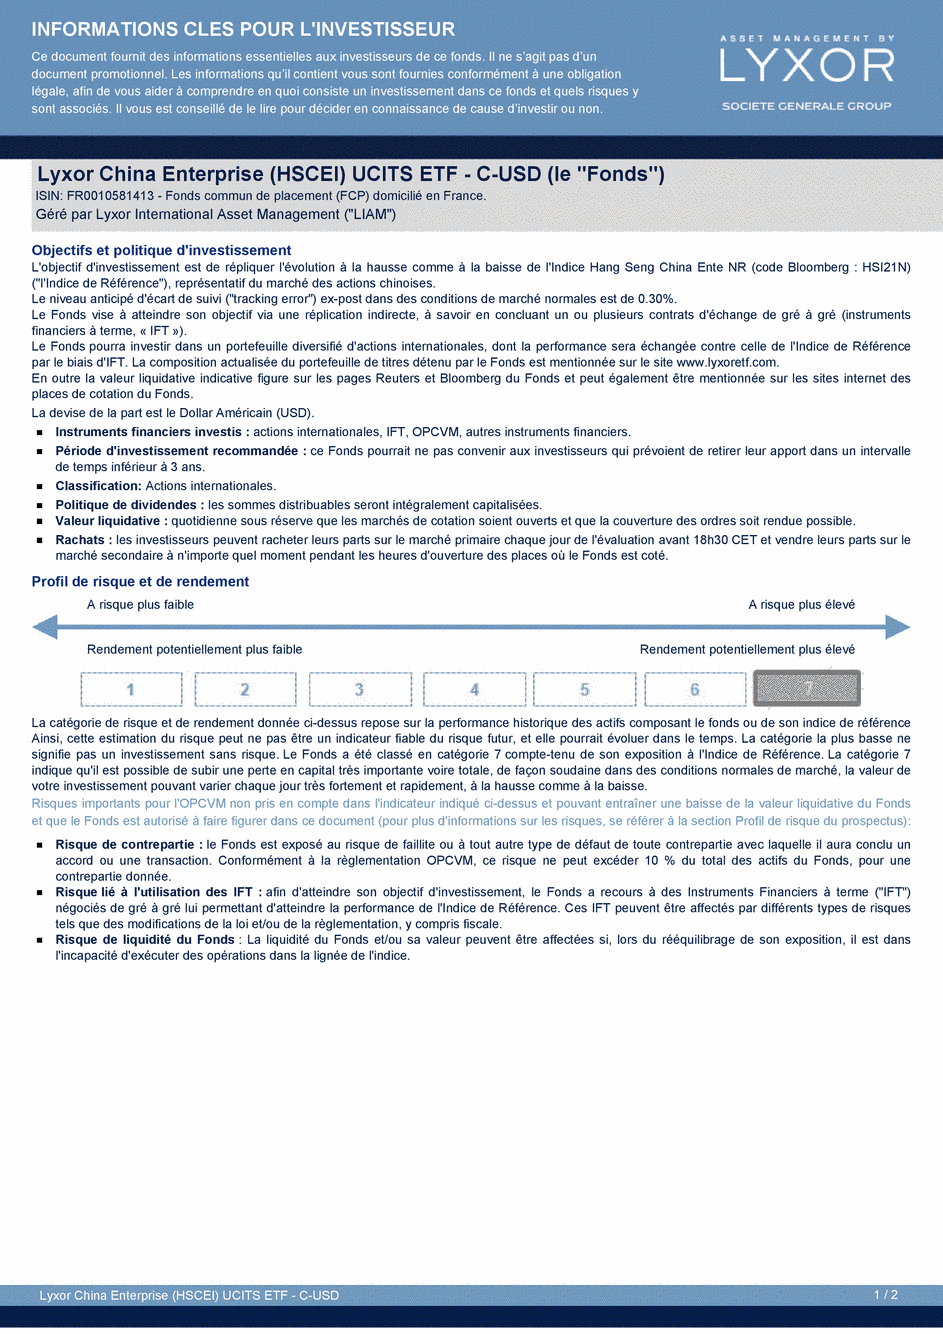 DICI LYXOR CHINA ENTERPRISE (HSCEI) UCITS ETF C-USD - 27/05/2016 - Français